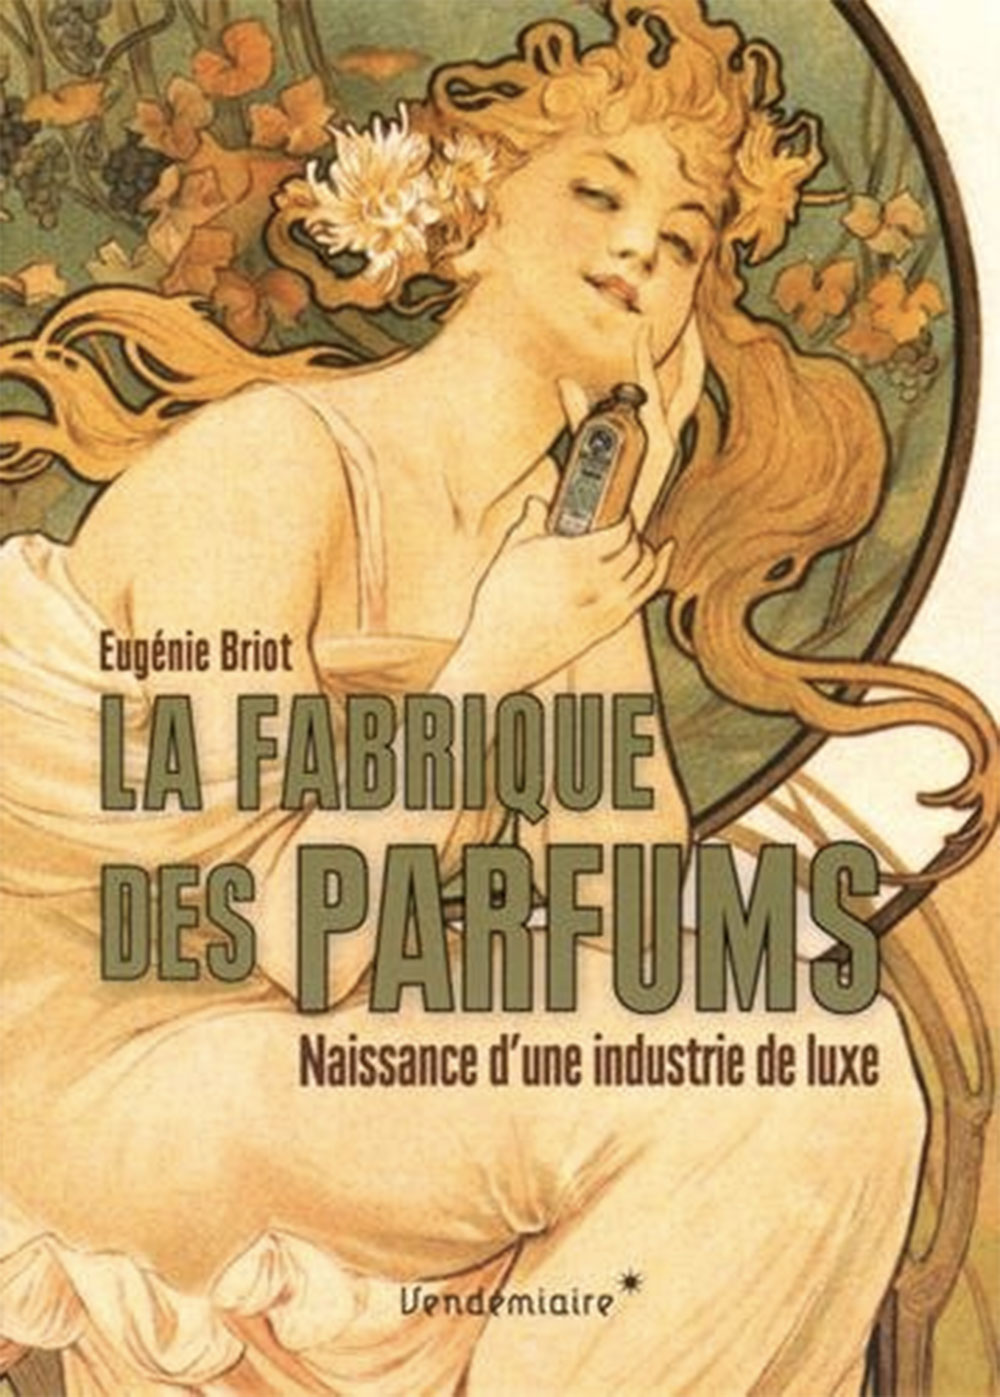 « La Fabrique des parfums. Naissance d’une industrie de luxe », d’Eugénie Briot